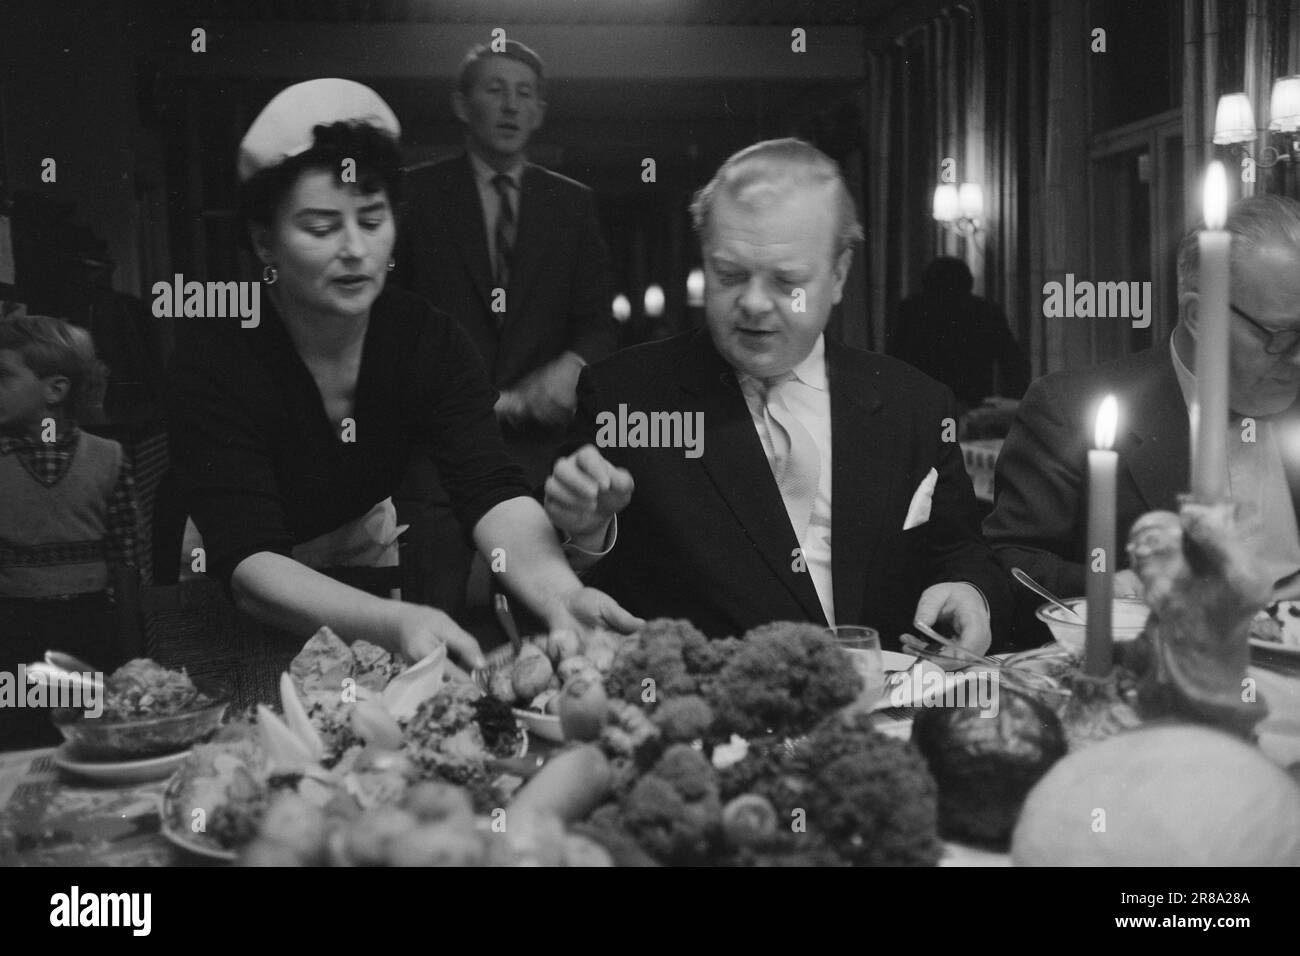 Courant 52-2-1960: Le chou-fleur à la Ribs de Noël, acteur Willie Hoel avec des ablegoyers sur la table de Noël. Chlorophylle est une fête cette année, la fête de l'entreprise a eu lieu dans le restaurant de la nourriture crue sous la devise: "Bien-être dans le lieu de travail. Pour combattre la cardialgie, les bûcherons et la mauvaise haleine. Pommes de terre oui. Si vous ne pouvez pas manger des pommes de terre sans côtes, vous ne devriez pas avoir de côtes, je dis généralement. Au fait, la nourriture est horrible, ce cochon. Plein de trichines et de toutes les autres laidages. Photo: Sverre A. Børretzen / Aktuell / NTB ***PHOTO NON TRAITÉE*** Banque D'Images